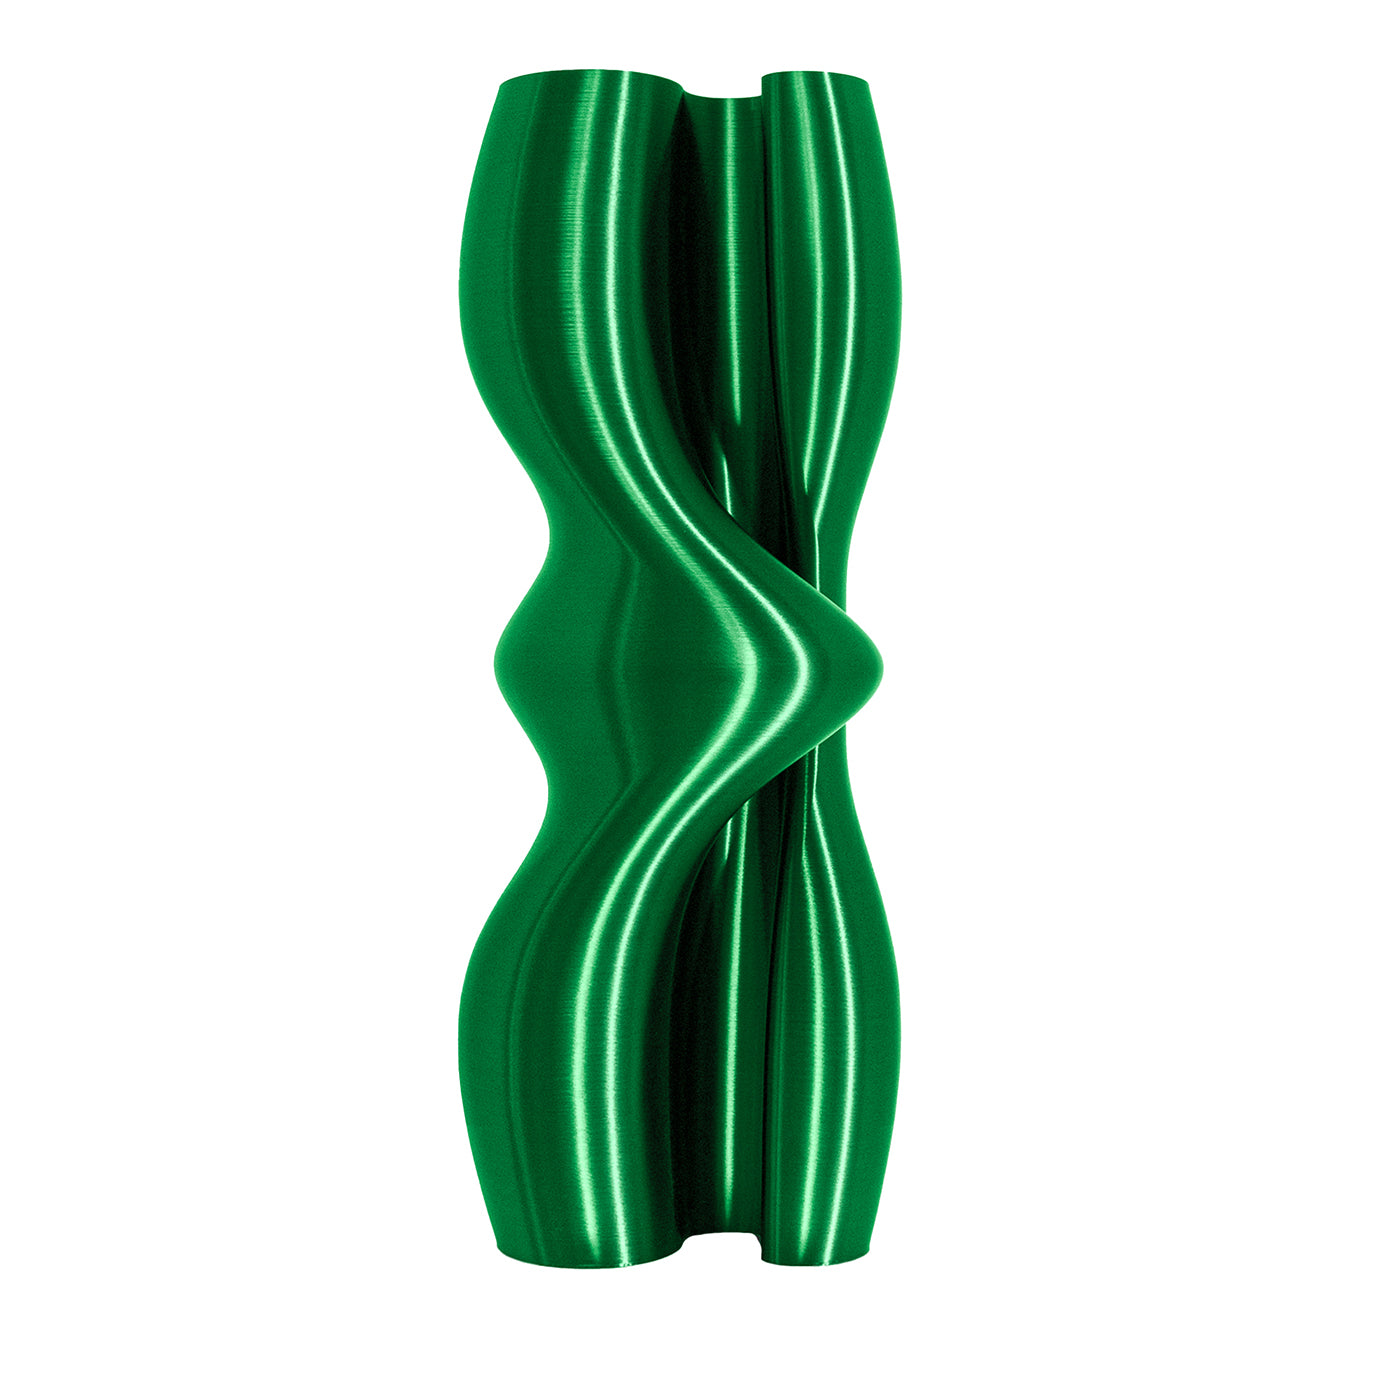 Gefühlsgrüne Vasen-Skulptur - Hauptansicht